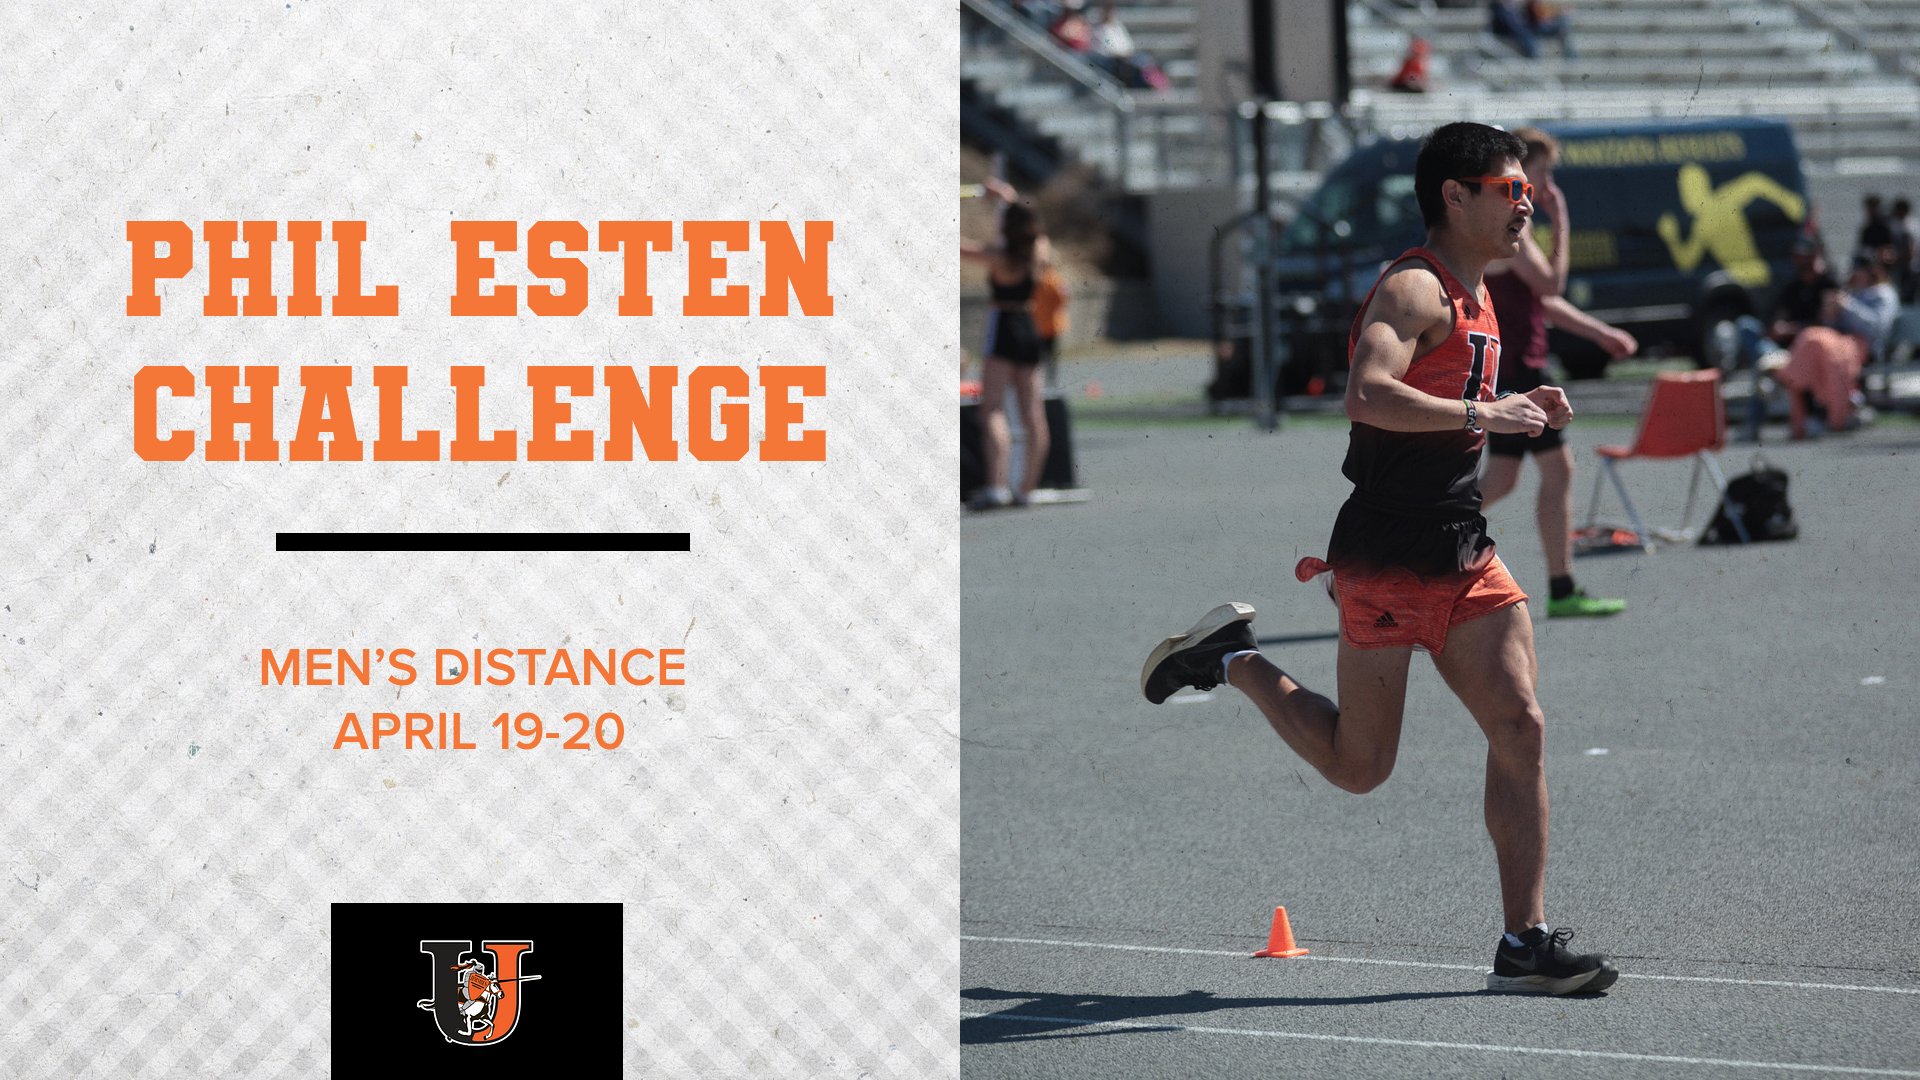 Men's distance competes at the Phil Esten Challenge